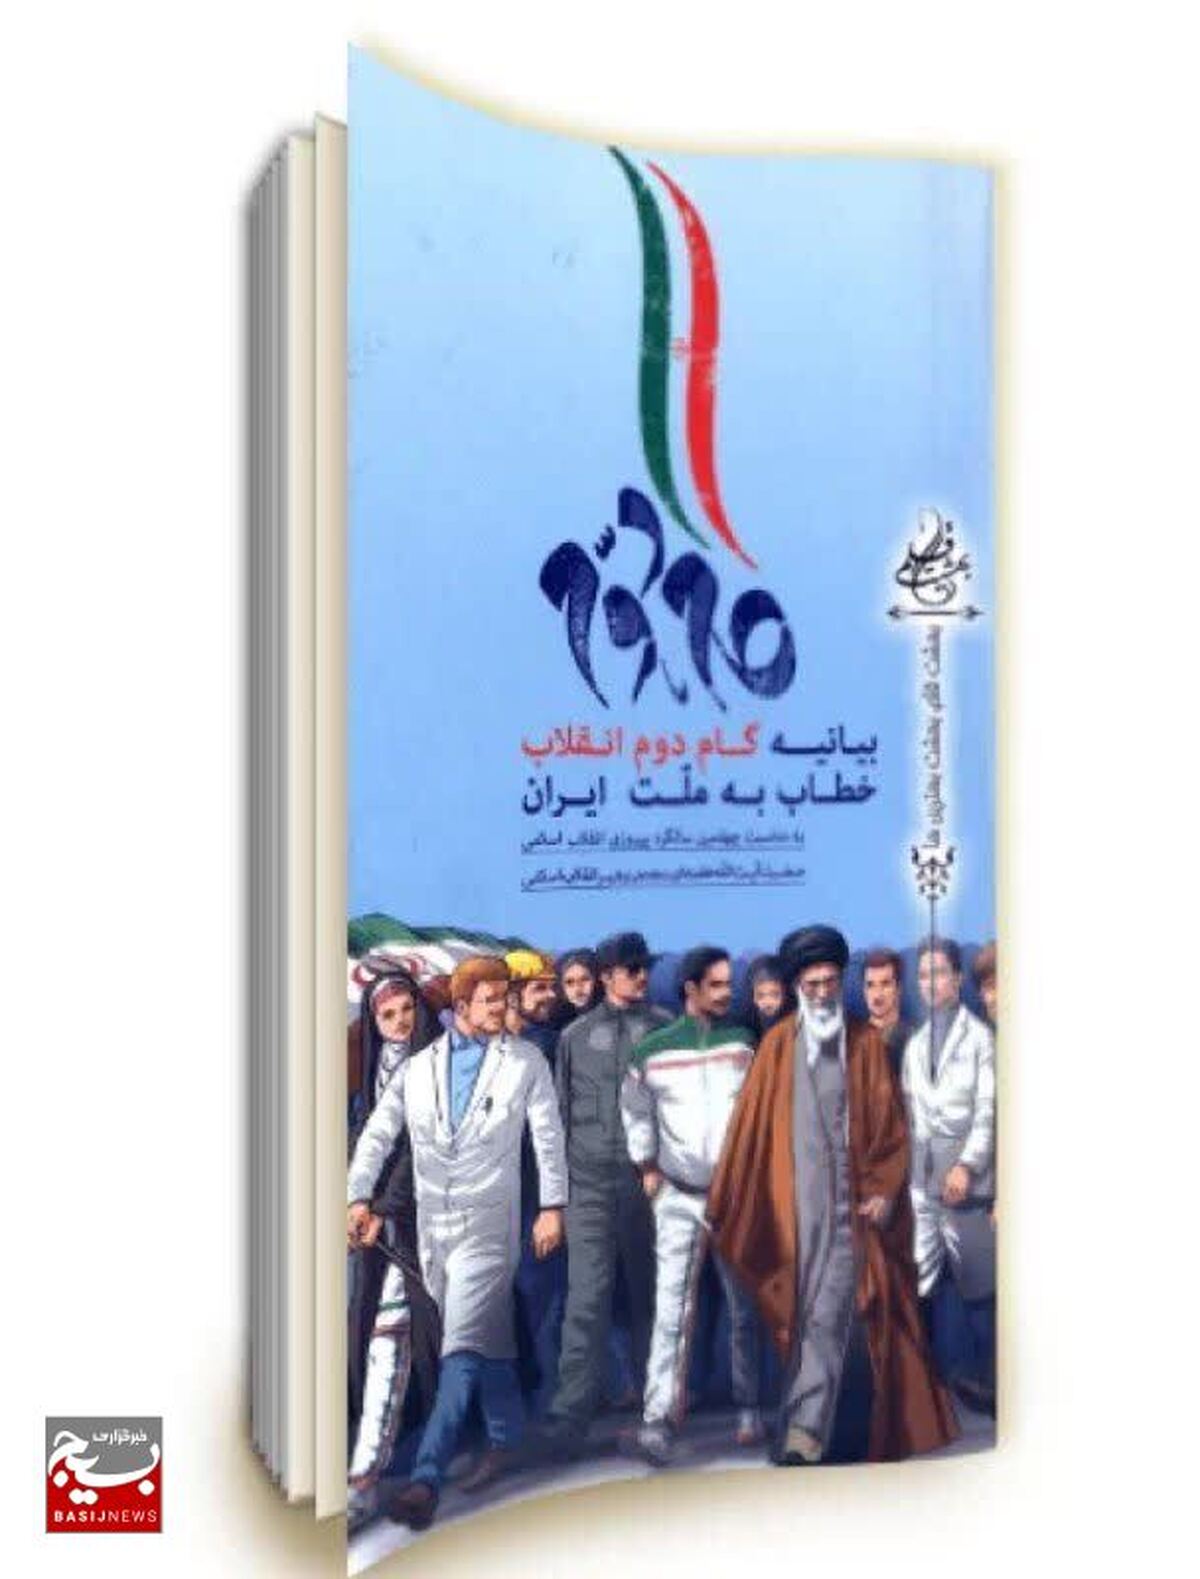  

اعلام اسامی برندگان مسابقه کتابخوانی بیانیه گام دوم انقلاب